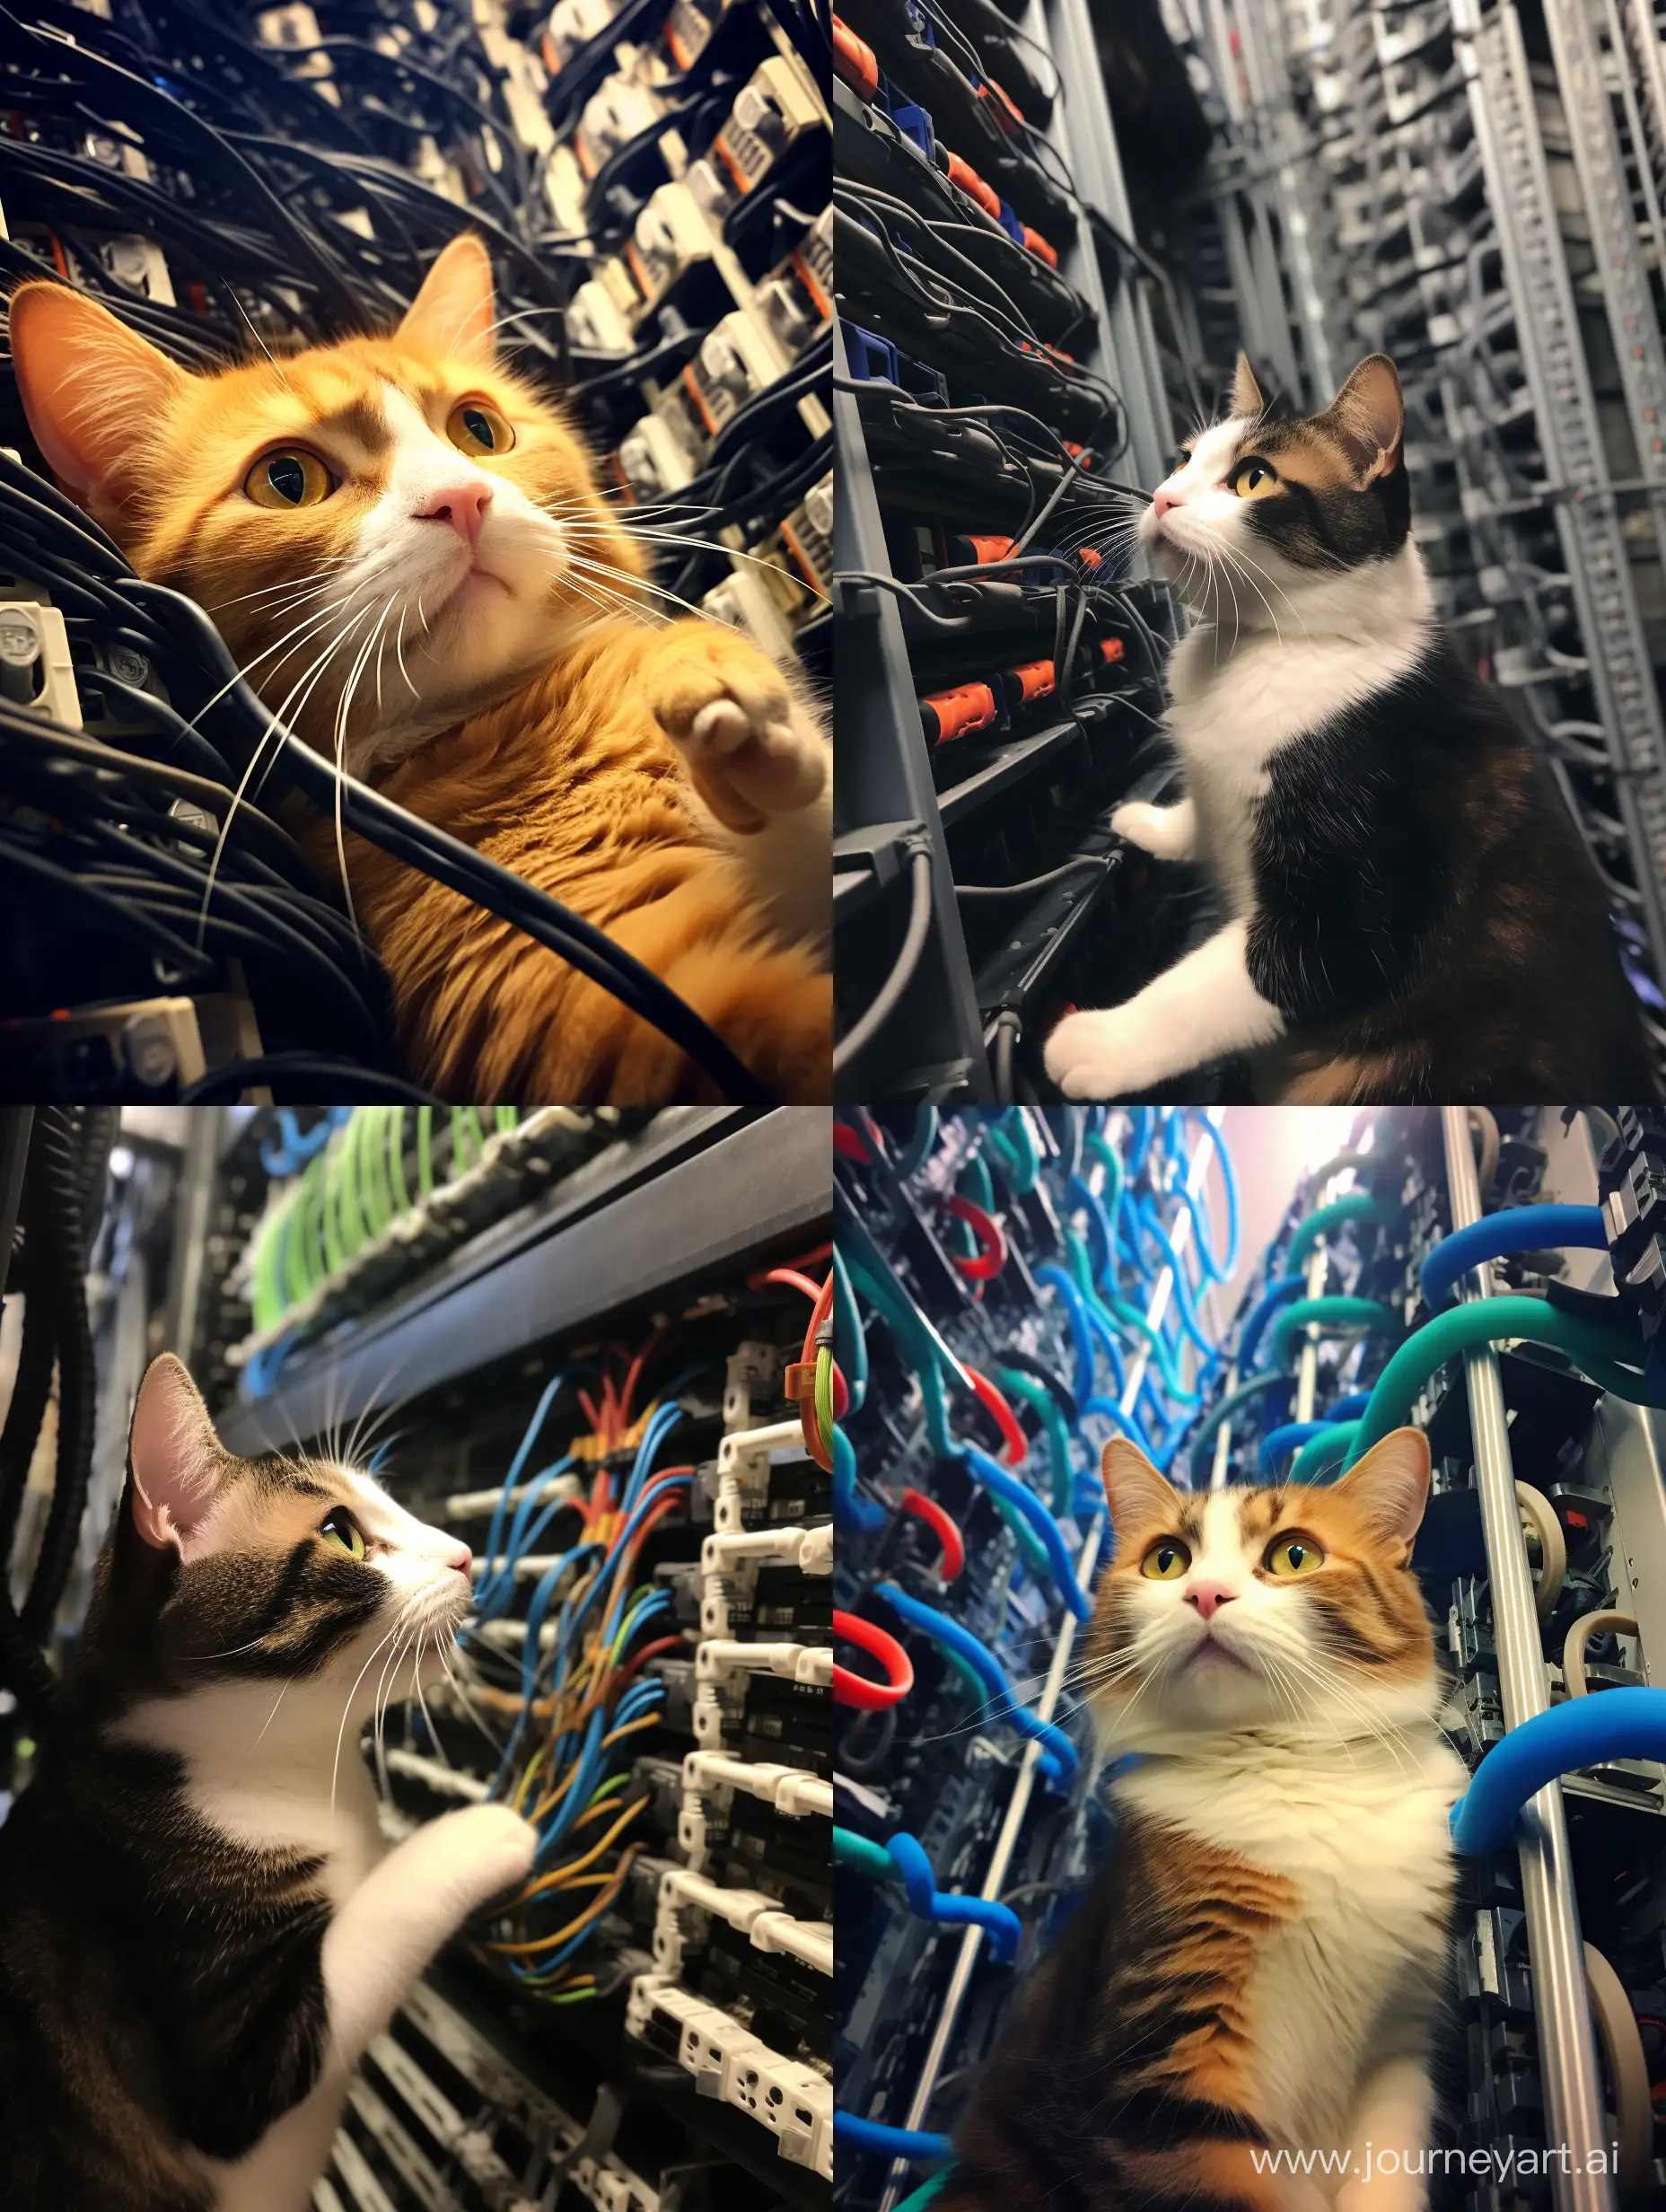 Cat-Roaming-Among-Data-Center-Servers